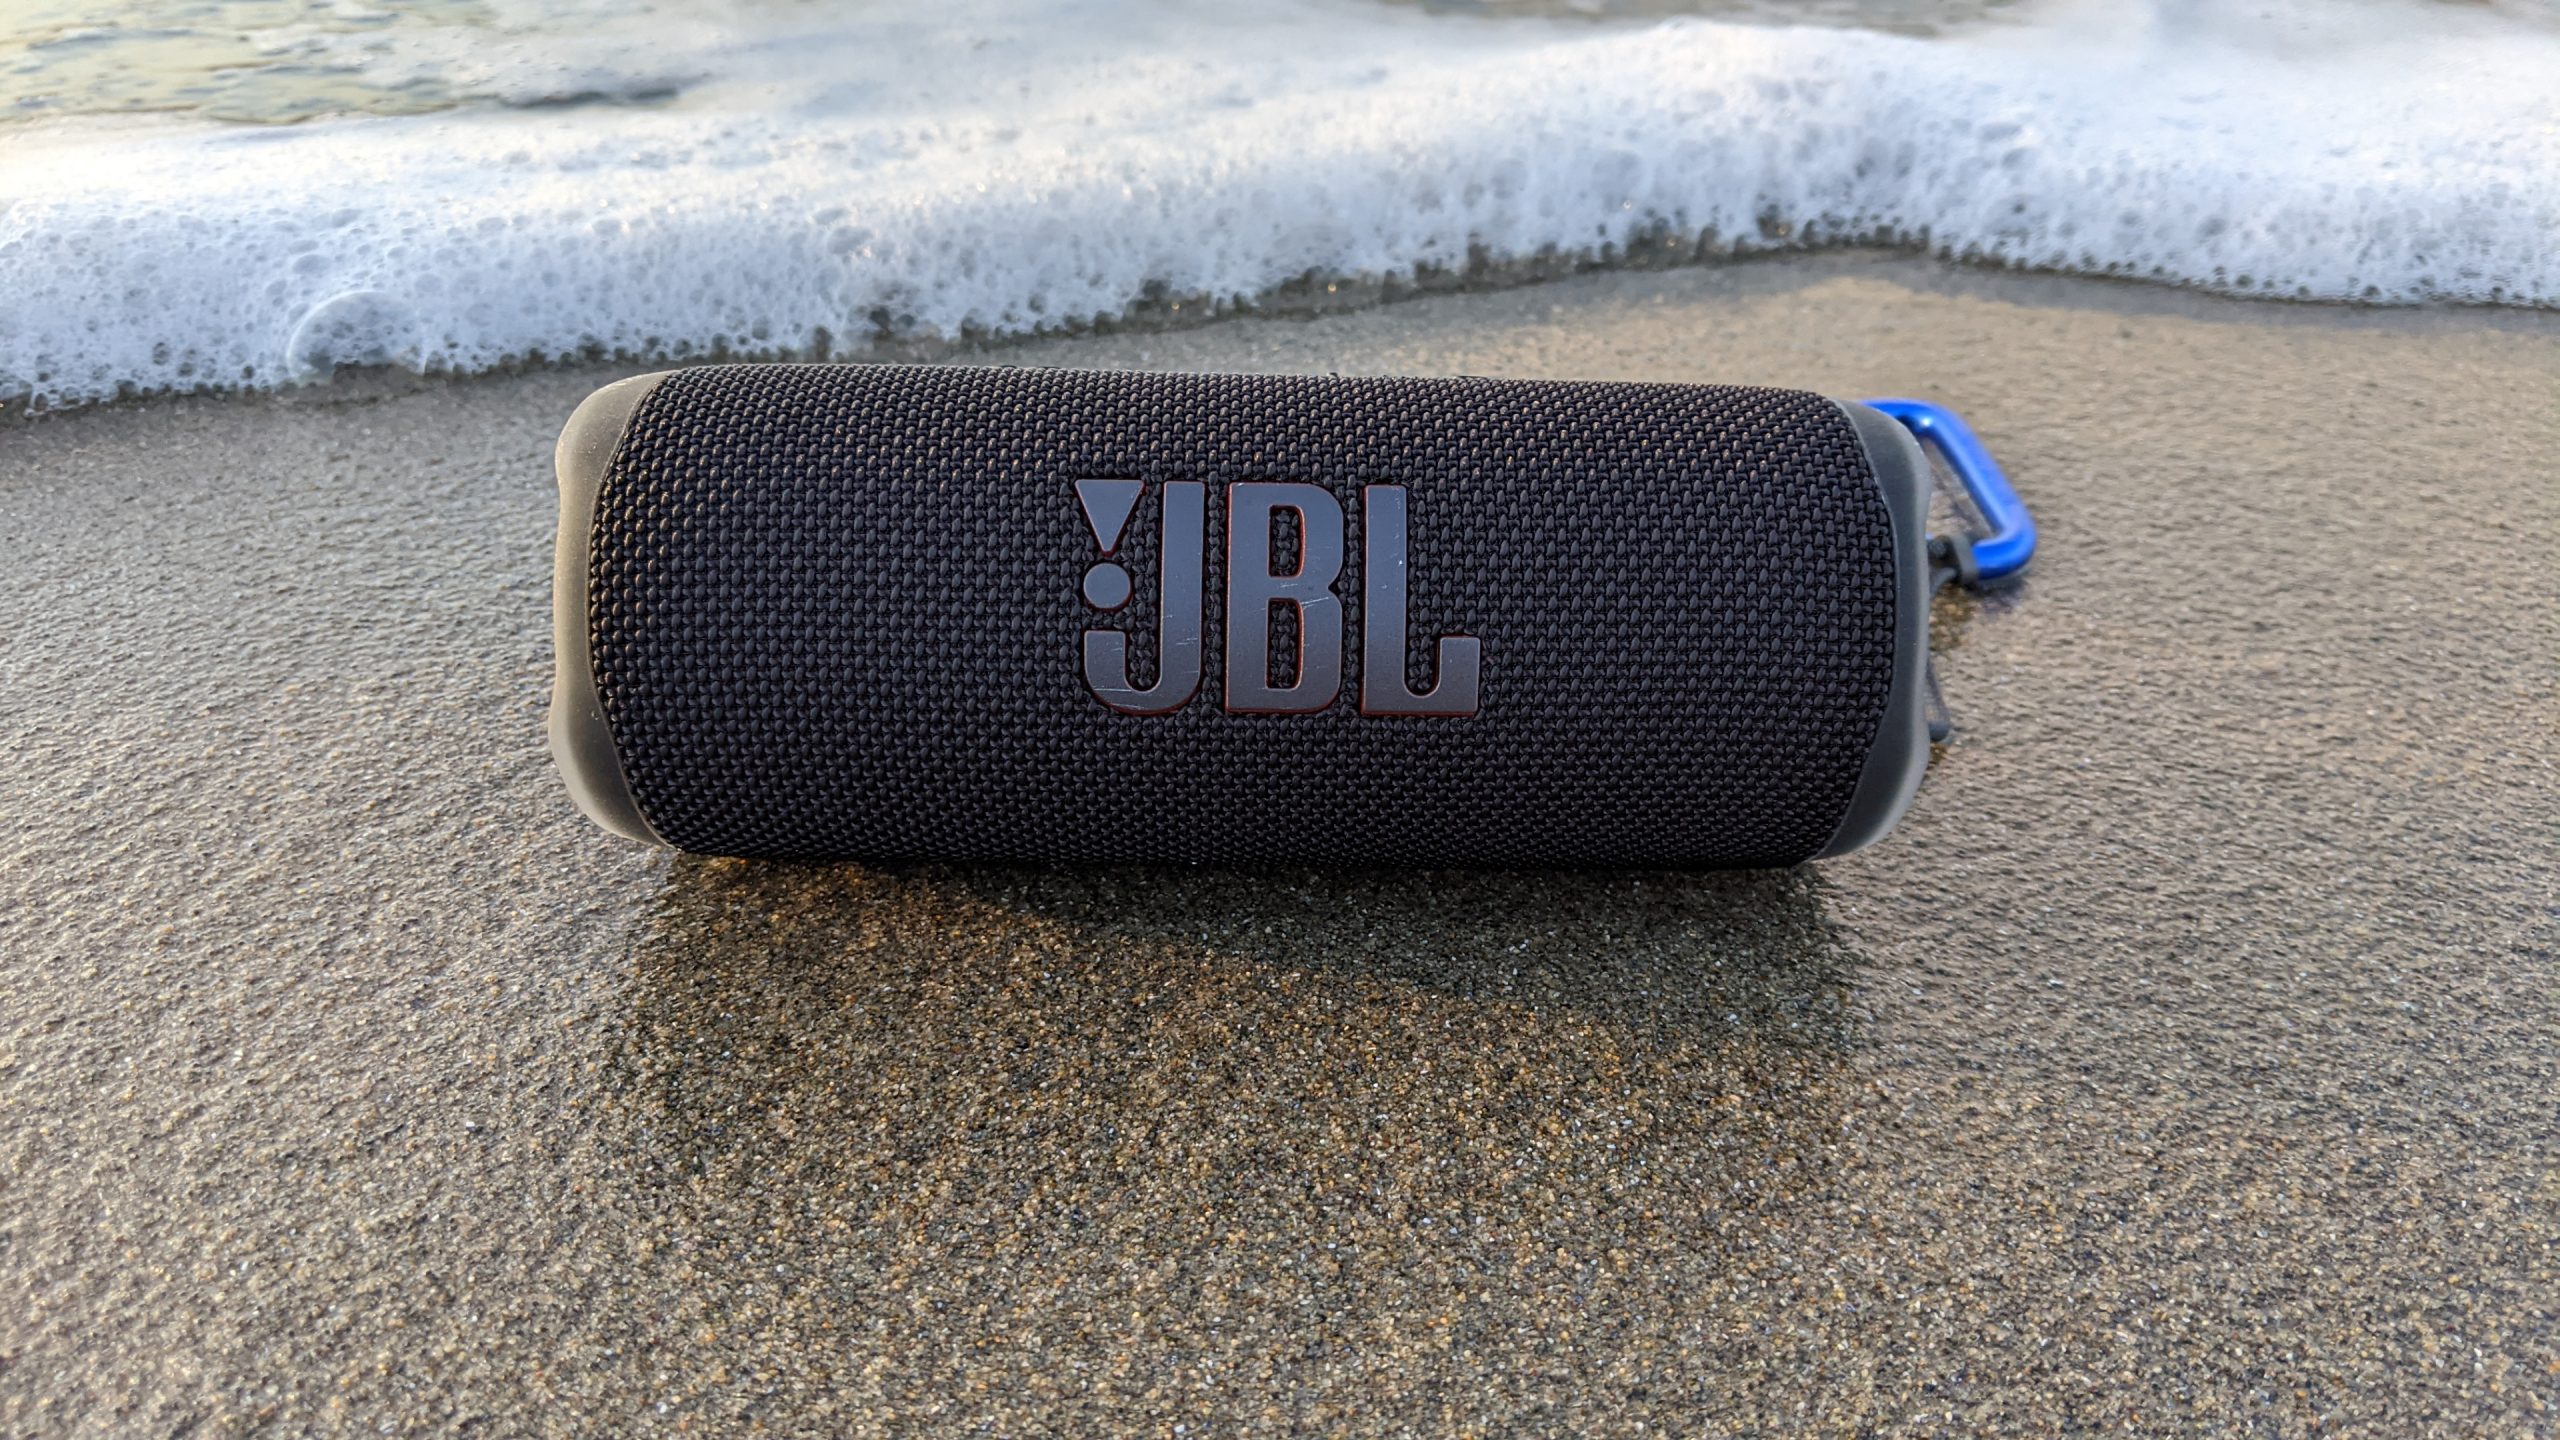  JBL FLIP 6 Portable Wireless Bluetooth Speaker IP67 Waterproof  - GG - Gray (Renewed) : Electronics